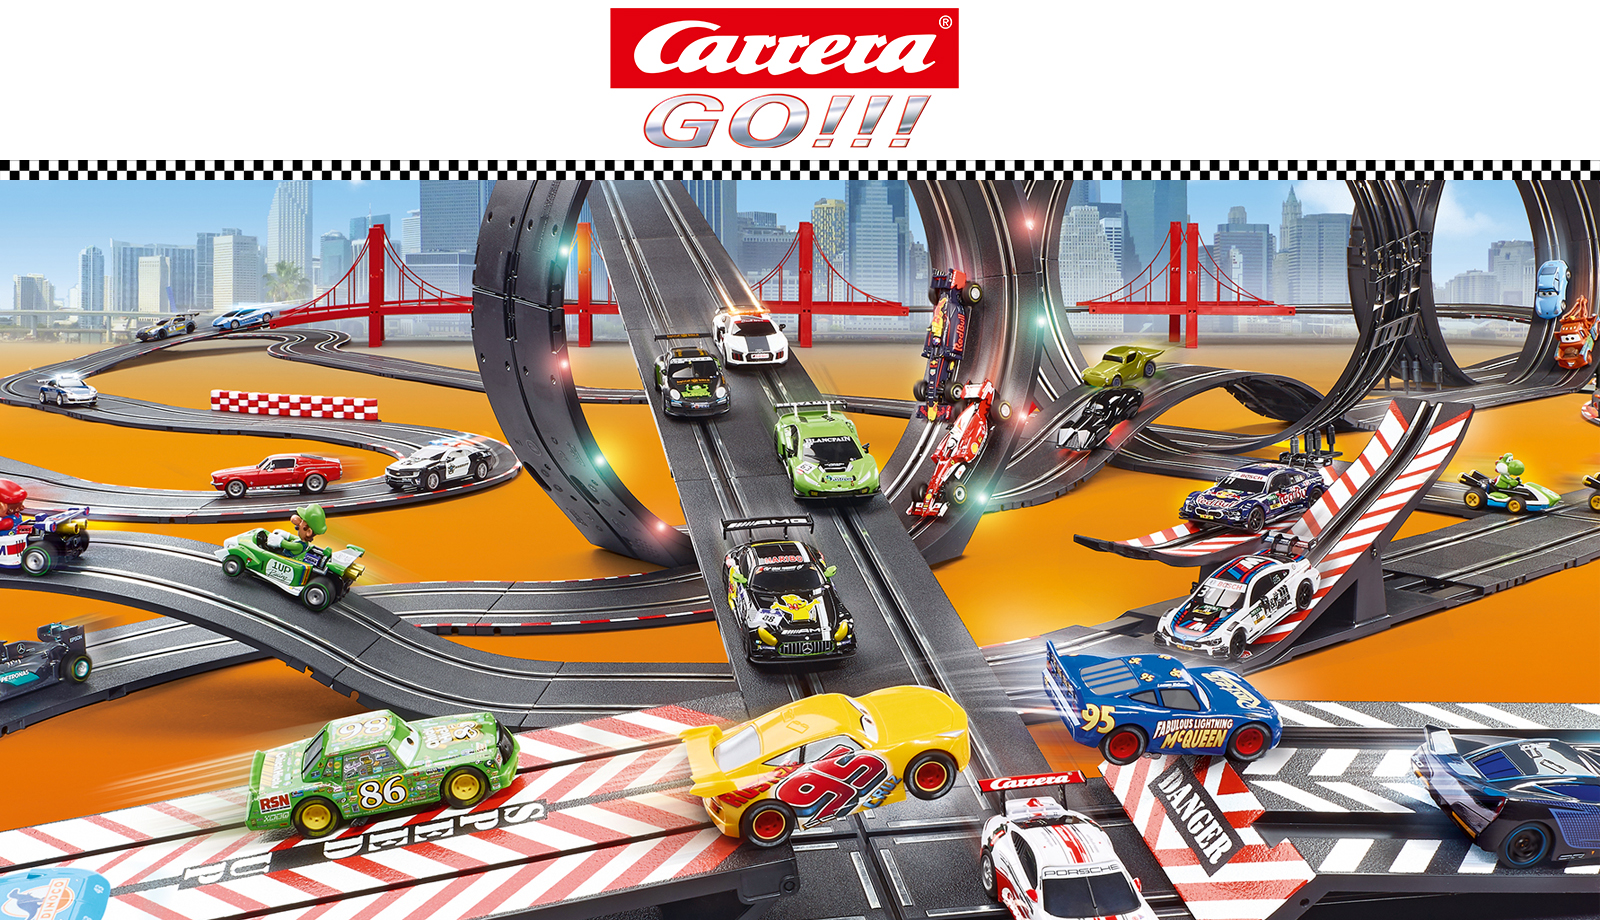 Promo Circuit Carrera Go!!! Race the Track chez E.Leclerc